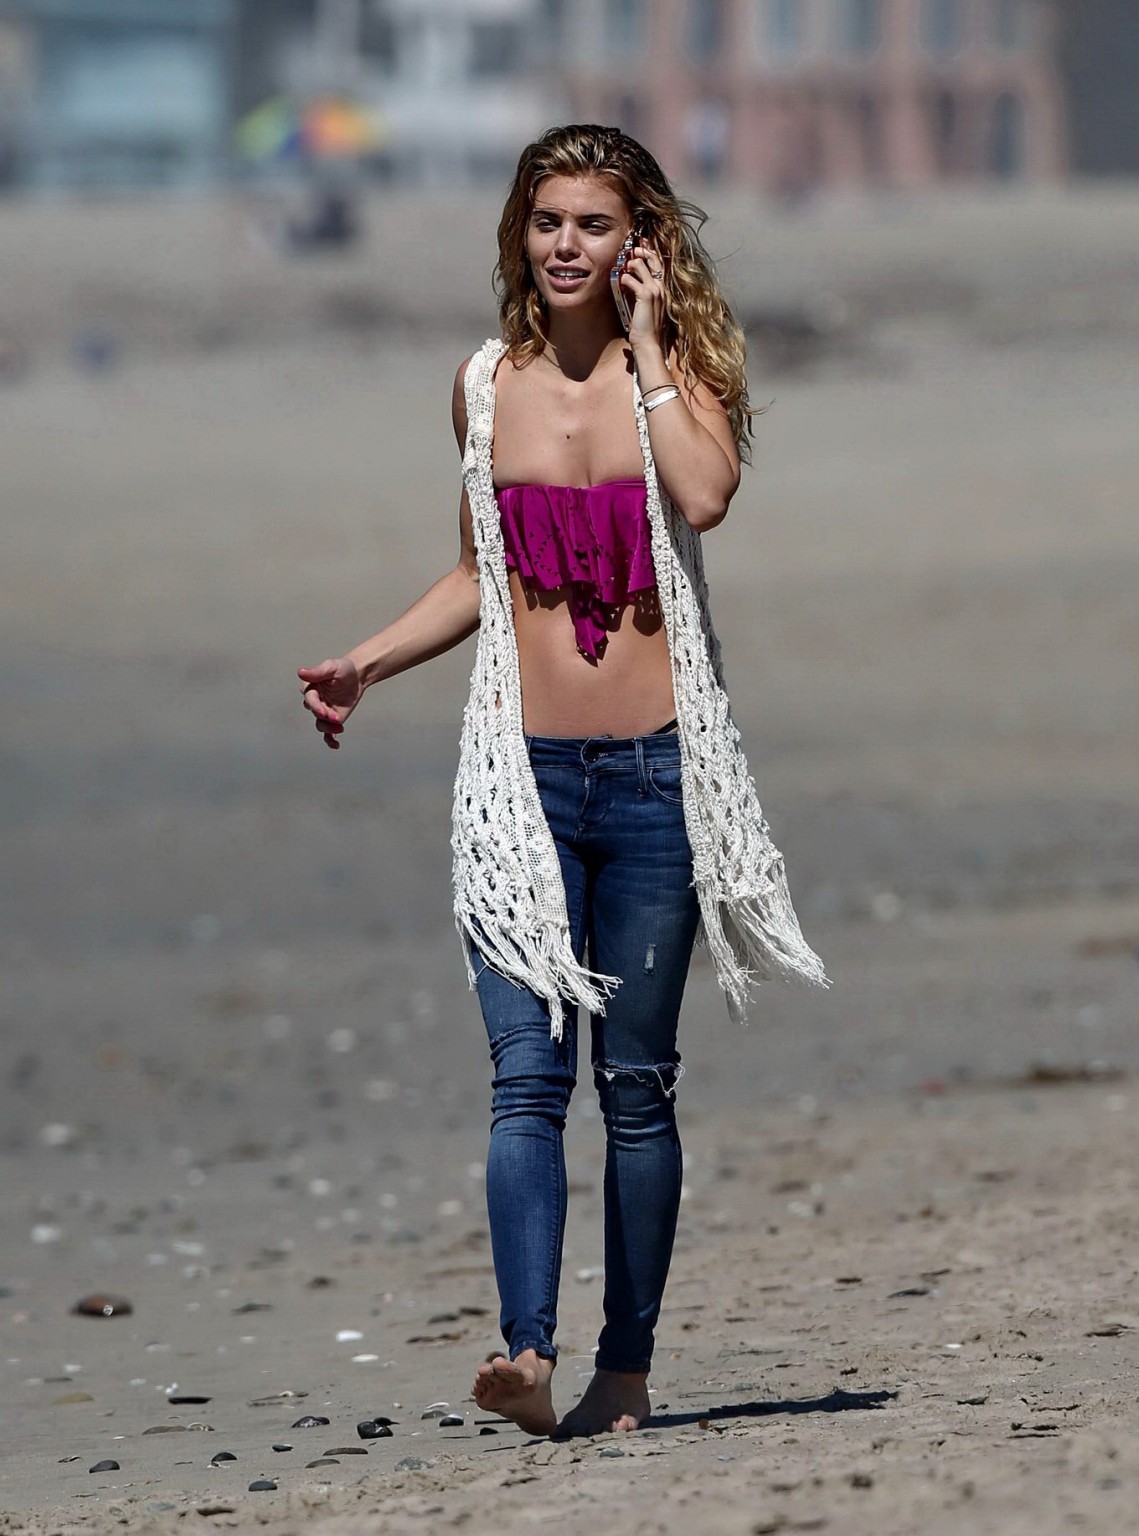 チューブトップのジーンズを着たAnnalynne MccordがLAのビーチで撮影
 #75202226